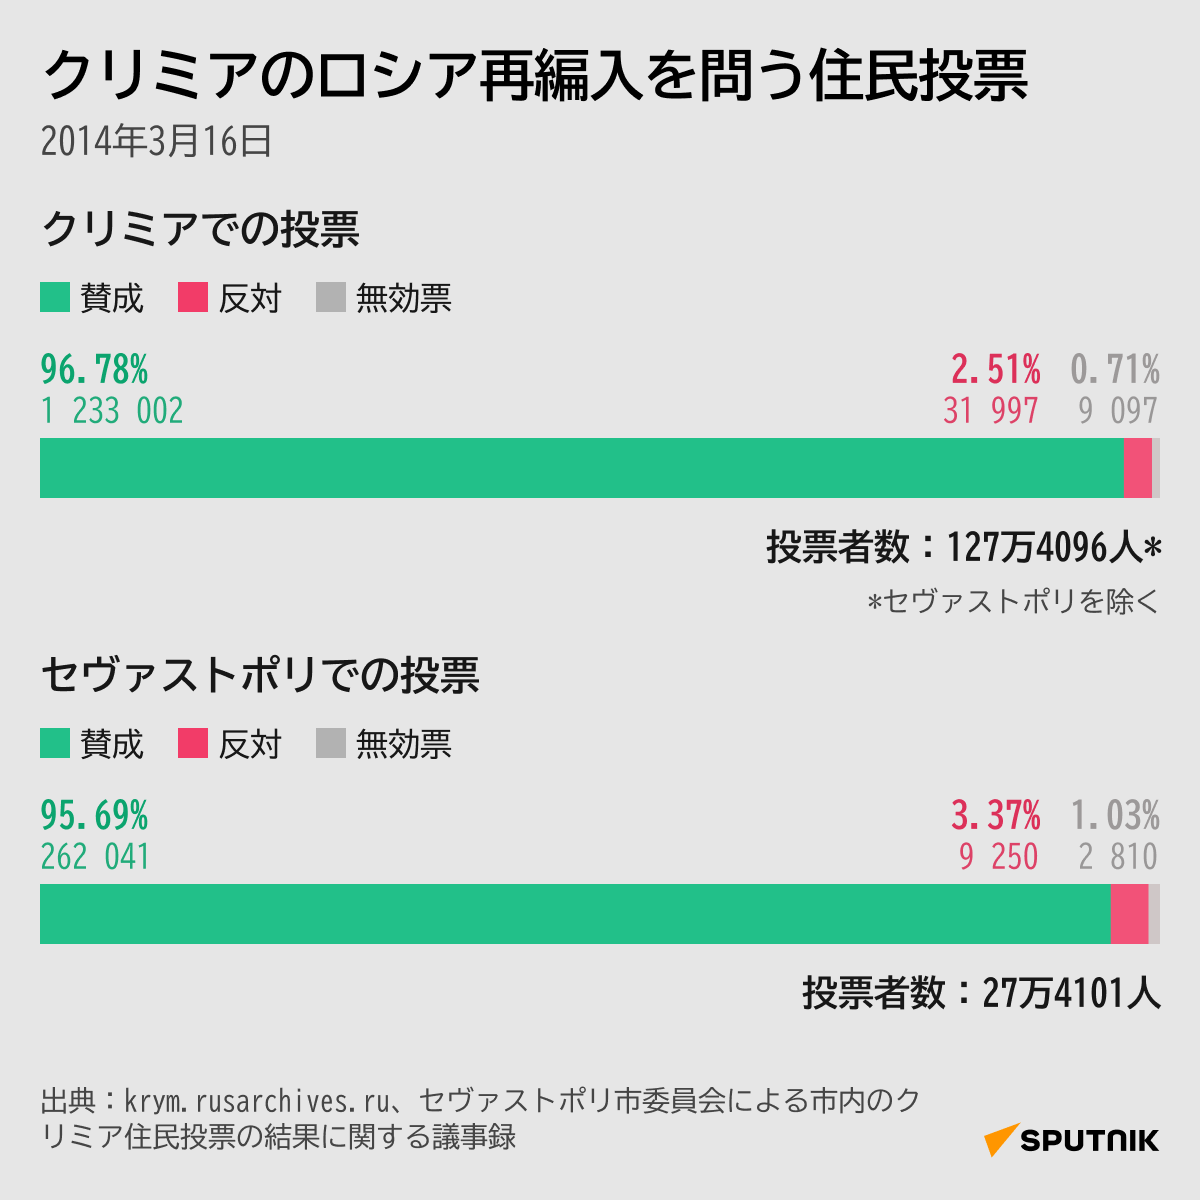 クリミアのロシア再編入を問う住民投票 - Sputnik 日本